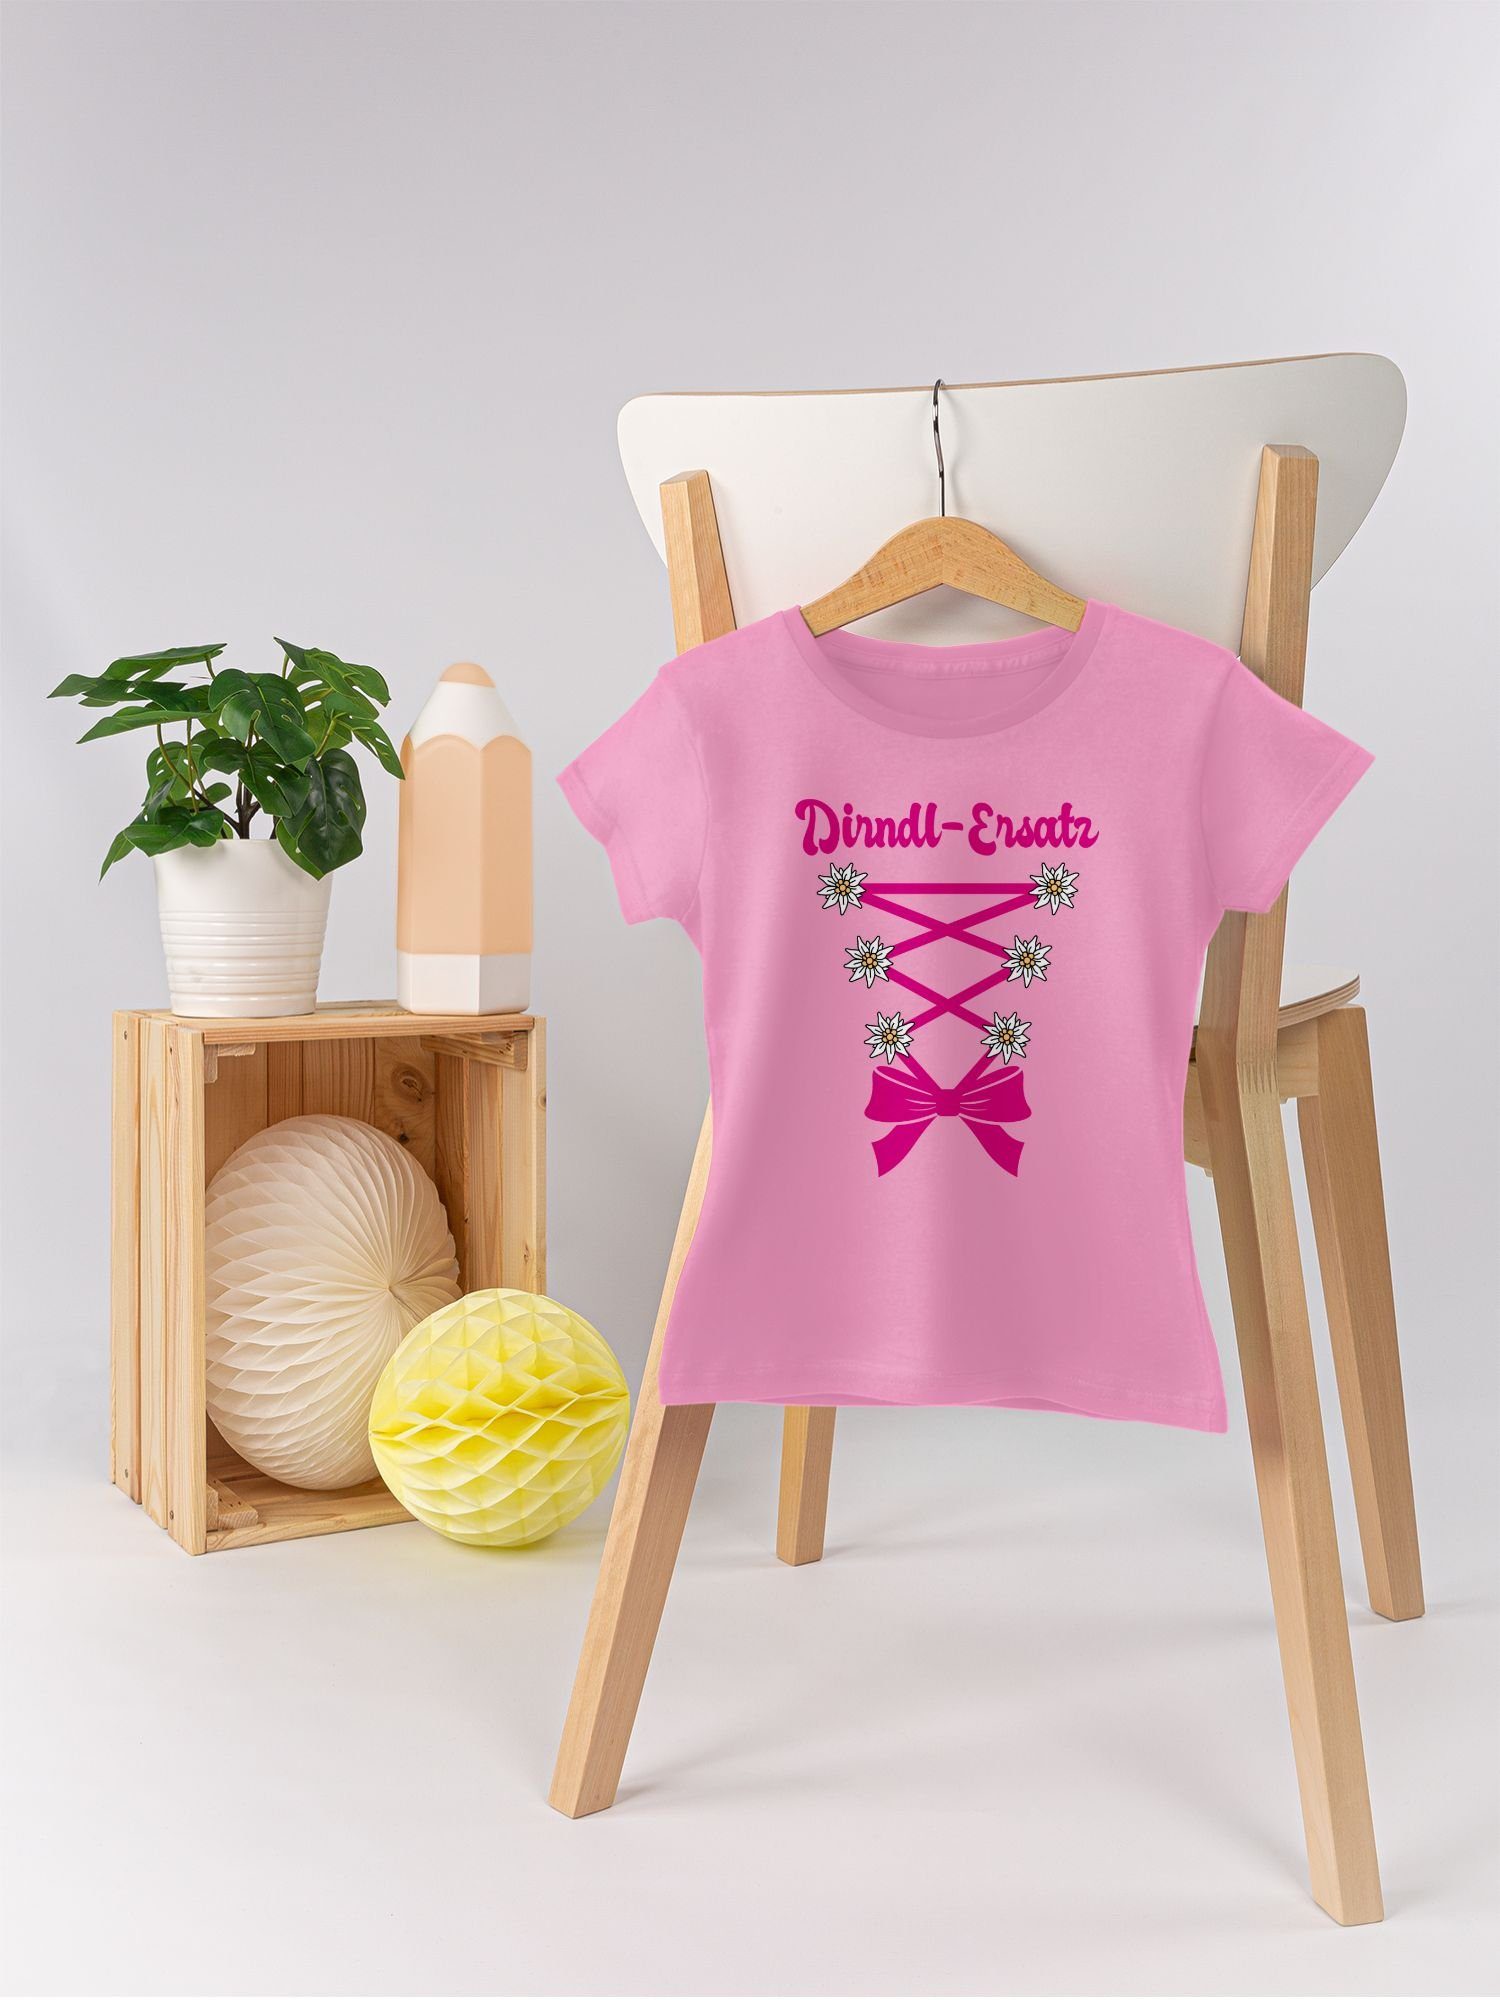 Kinder - T-Shirt für Korsage Dirndl-Ersatz 2 Outfit Mode Rosa Oktoberfest fuchsia Shirtracer